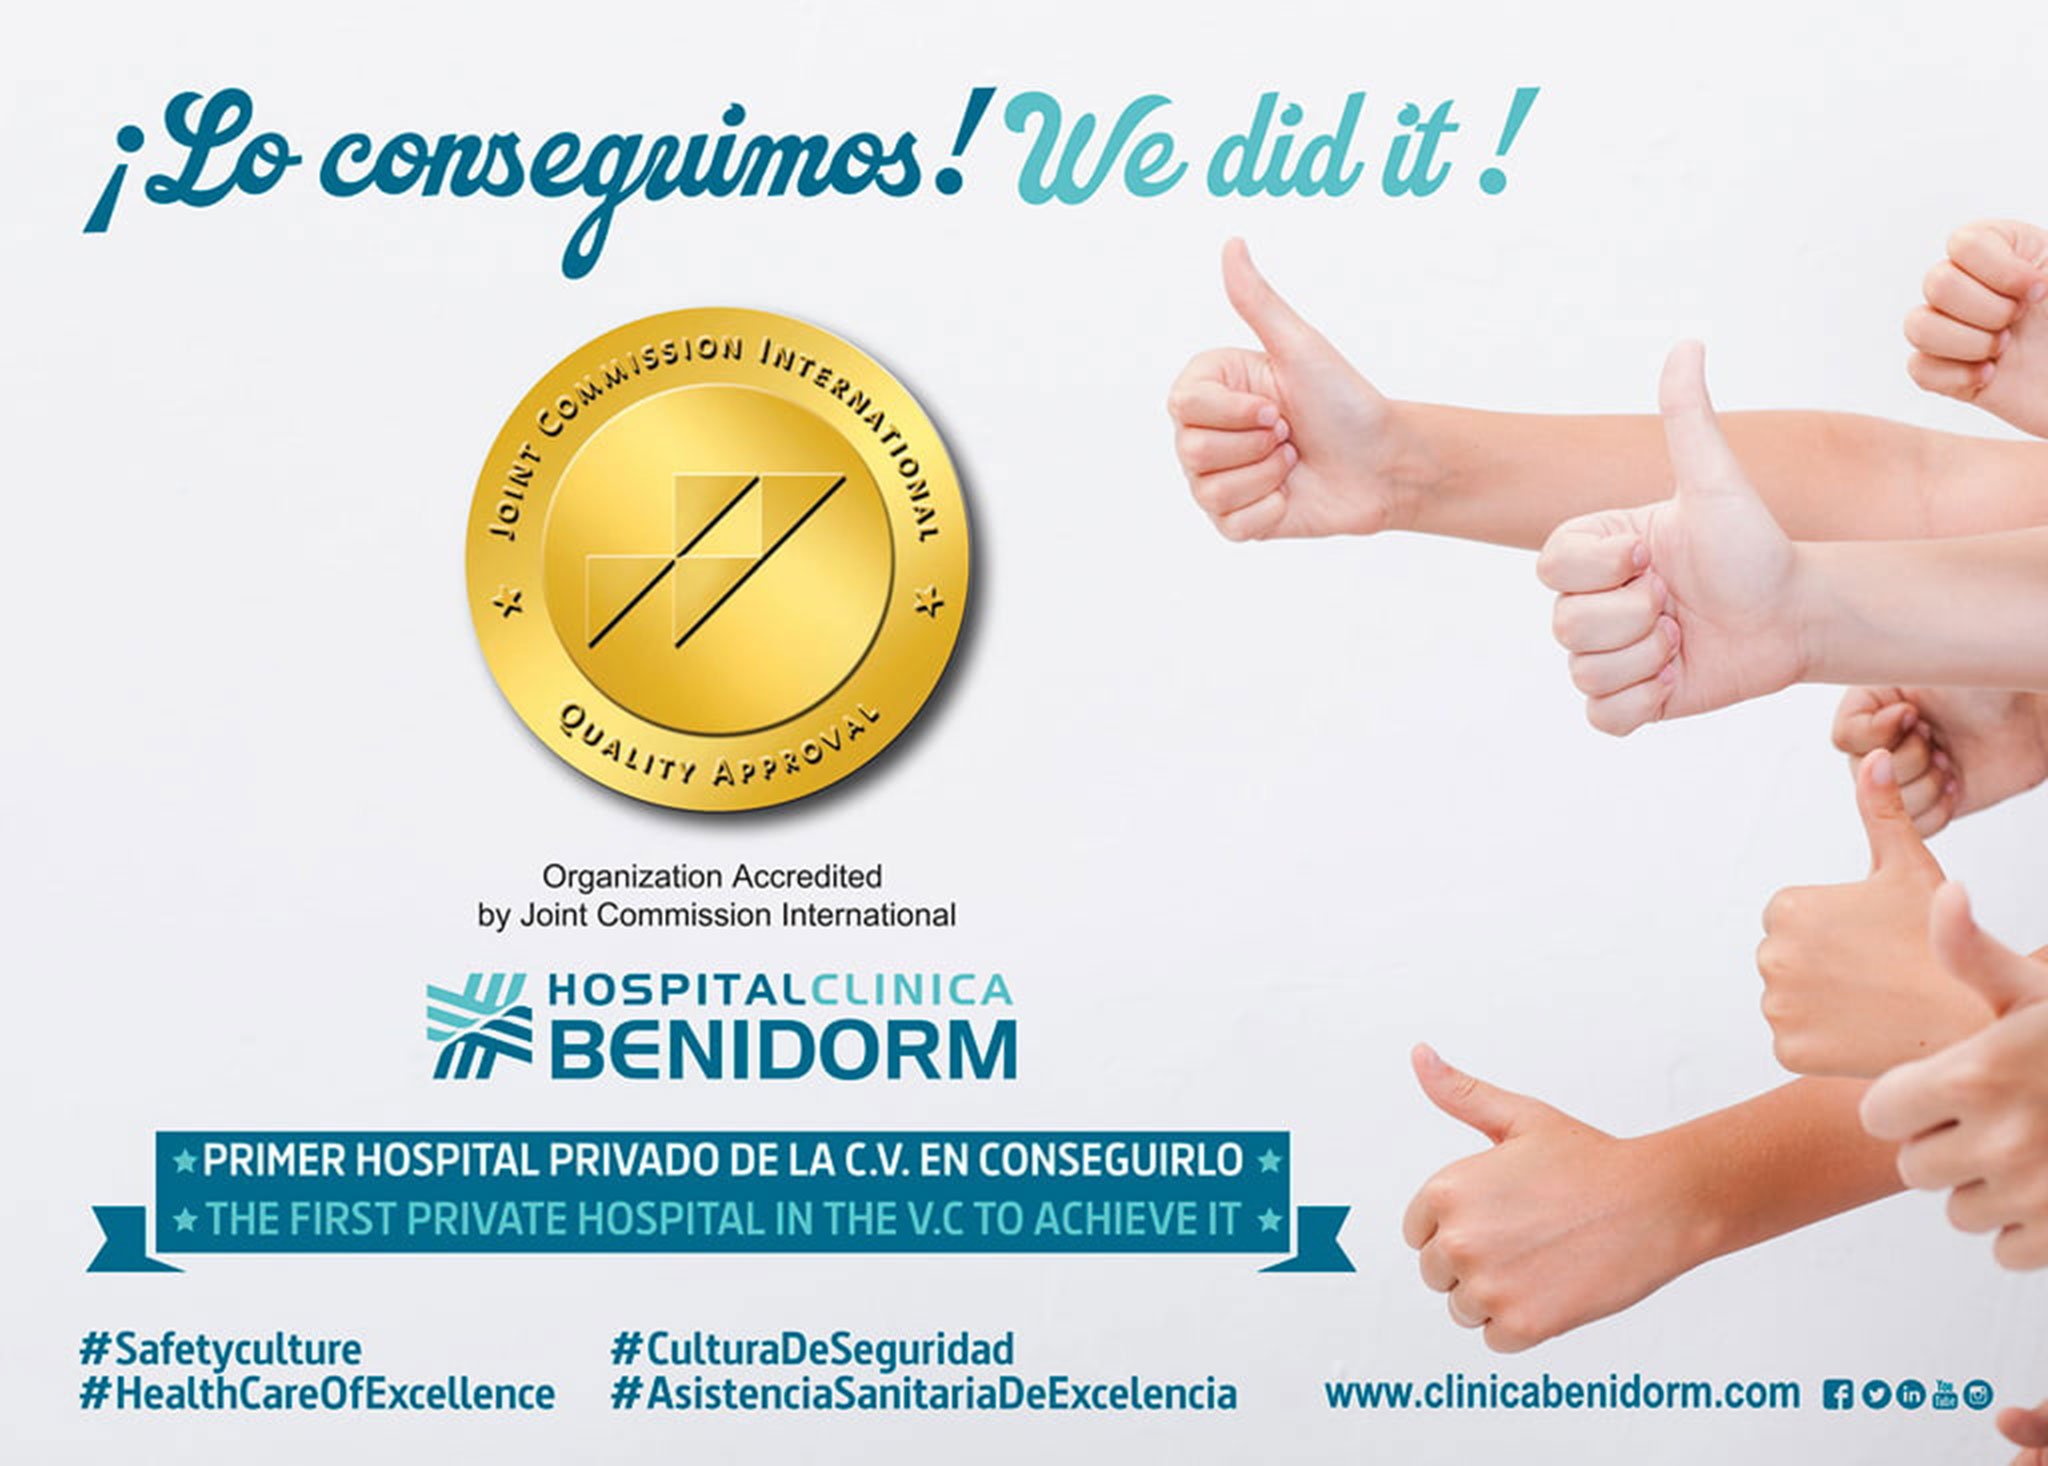 Hospital Clínica Benidorm consigue la mayor acreditación internacional